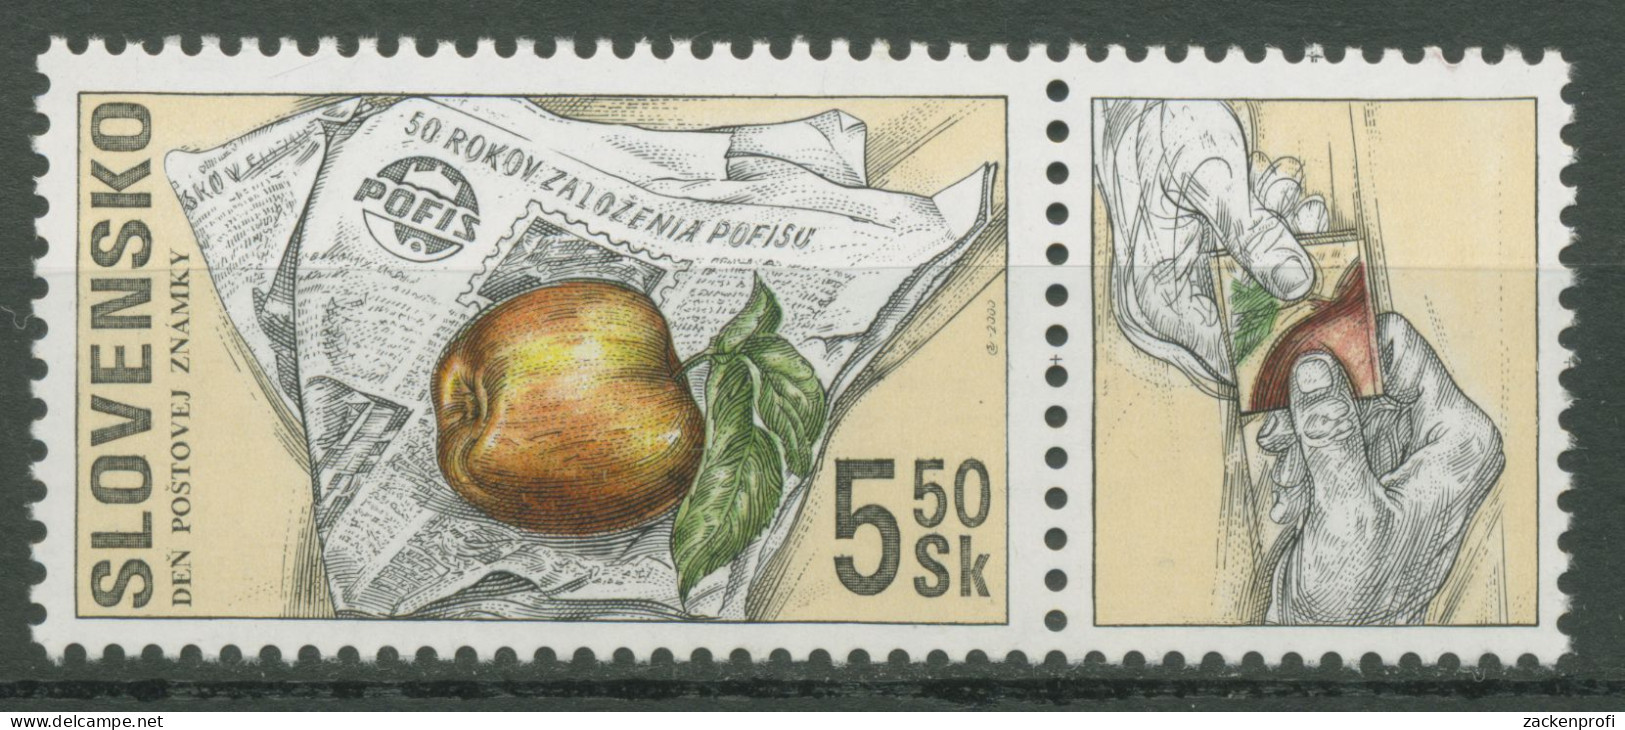 Slowakei 2000 Tag Der Briefmarke POFIS Zeitschrift 383 Zf Postfrisch - Nuovi